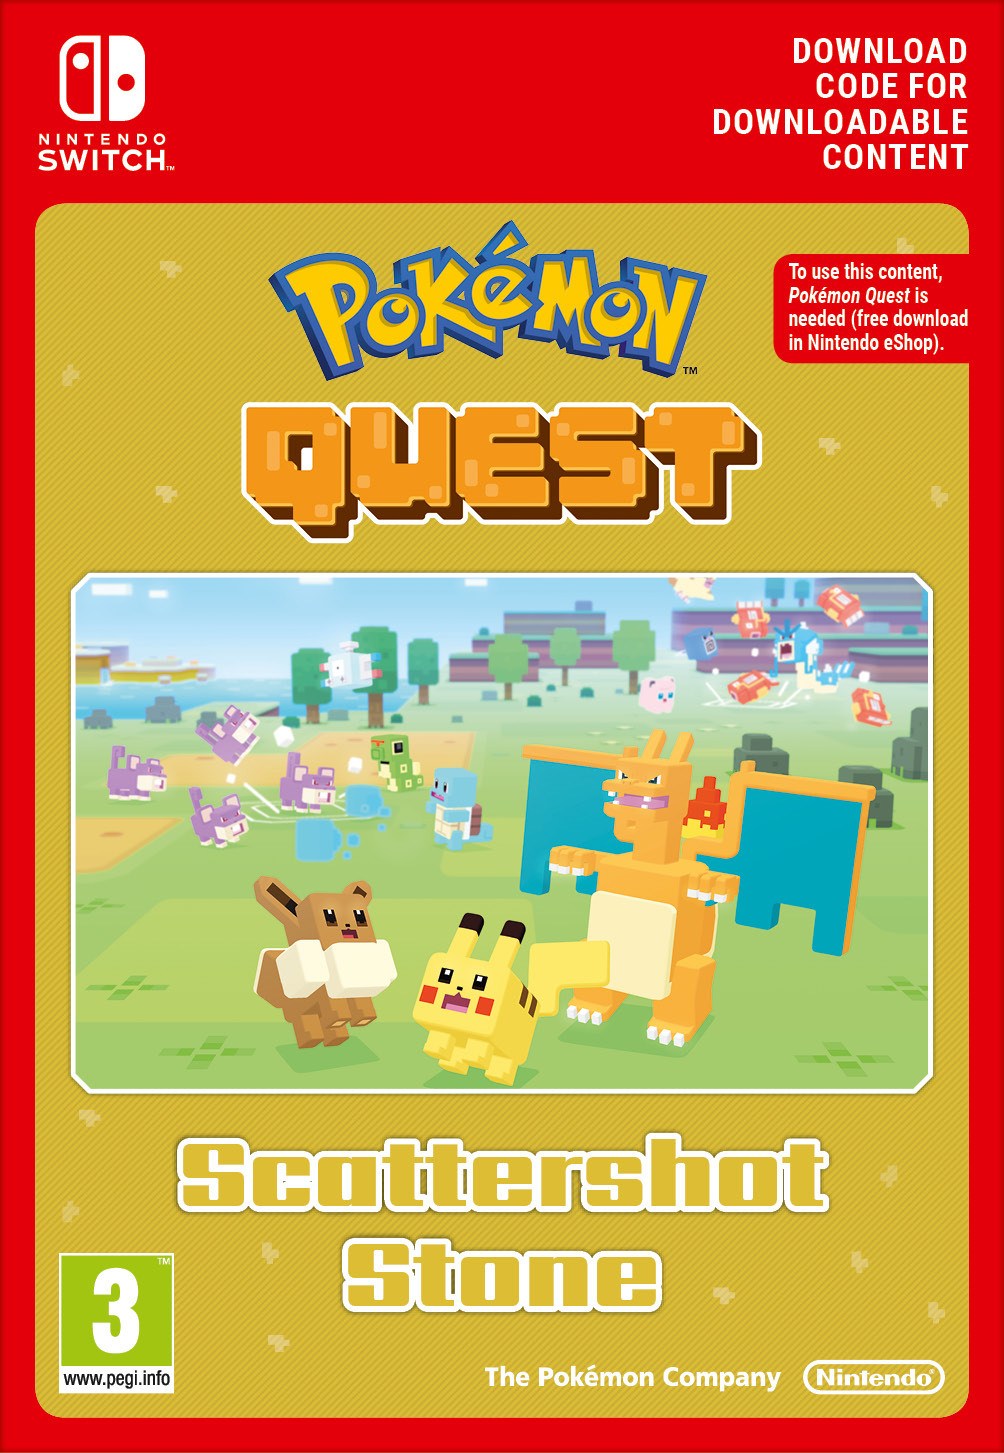 Pokémon™ Quest - Scattershot Stone von Nintendo